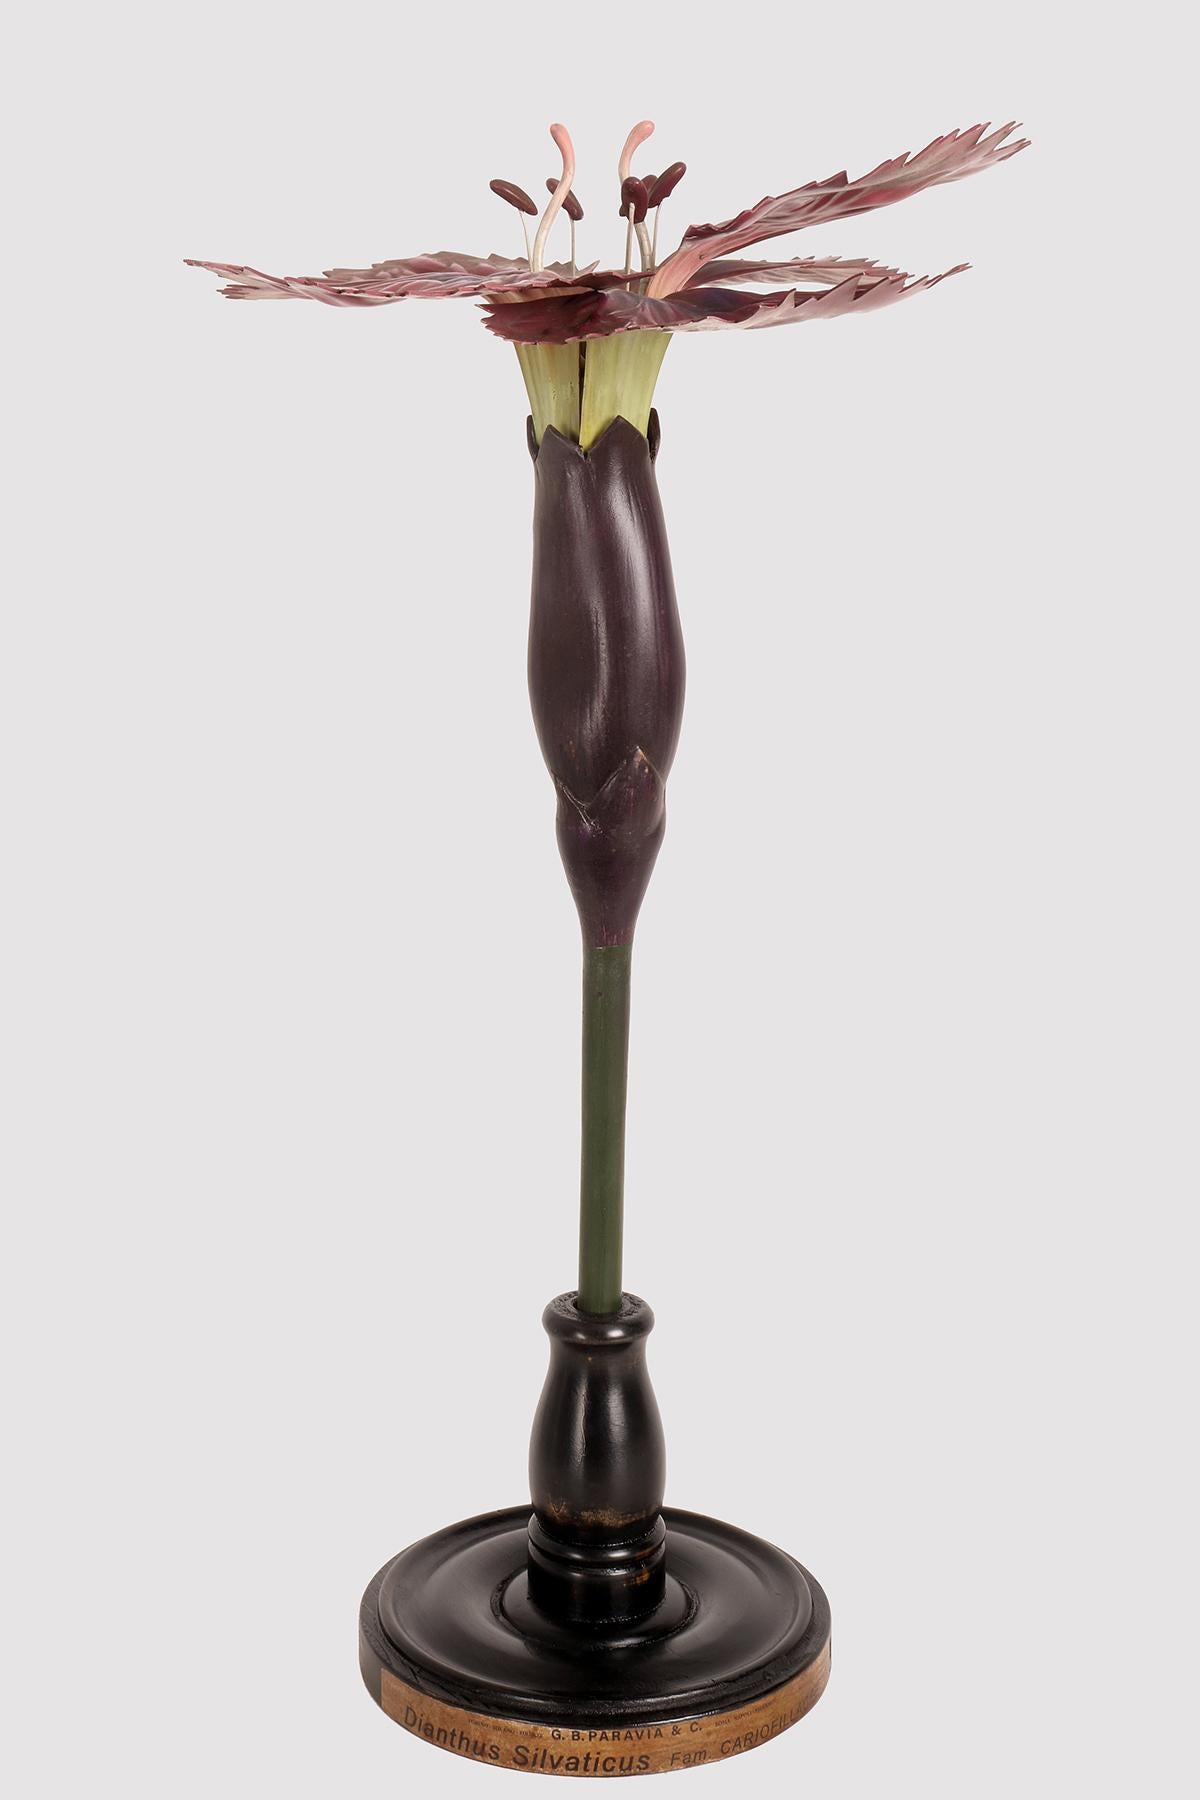 Eine botanische Maquette für den didaktischen Gebrauch, die eine Nelkenblüte, Dianthus Silvaticus, Cariofillacee, darstellt. Hergestellt aus Metall, Papier, Gips, Galalith und Holz. Äußerst detailliert. Paravia, Mailand, Italien, um 1940.